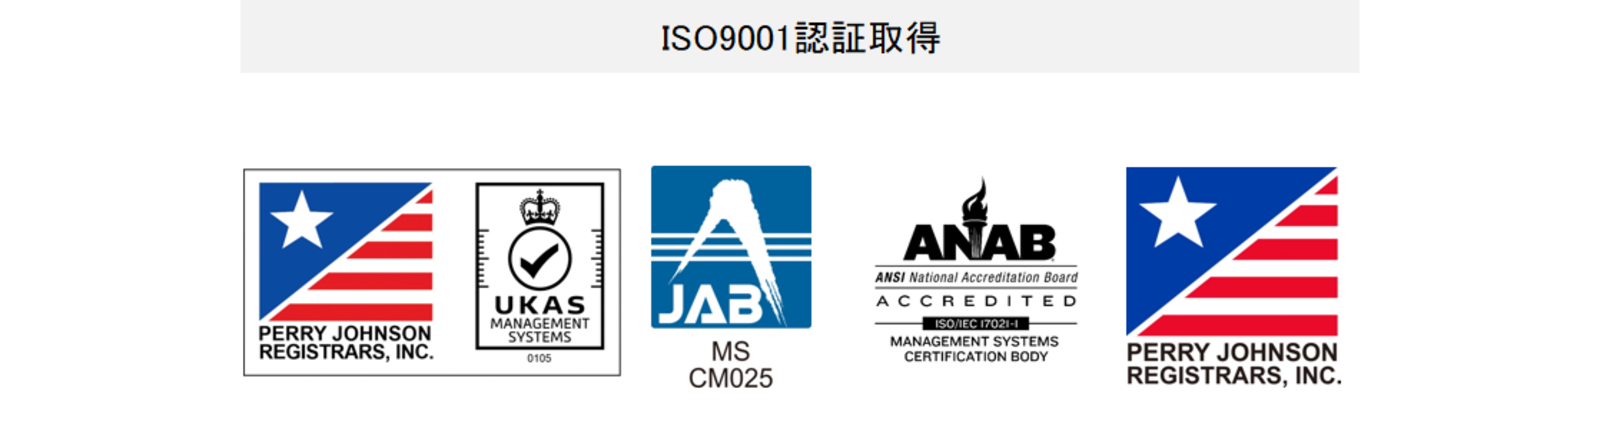 获得ISO9001认证 Perry Johnson Registrars-Quality Assurance UKAS management systems JAB MS CM023 The ANSI National Accreditation Board